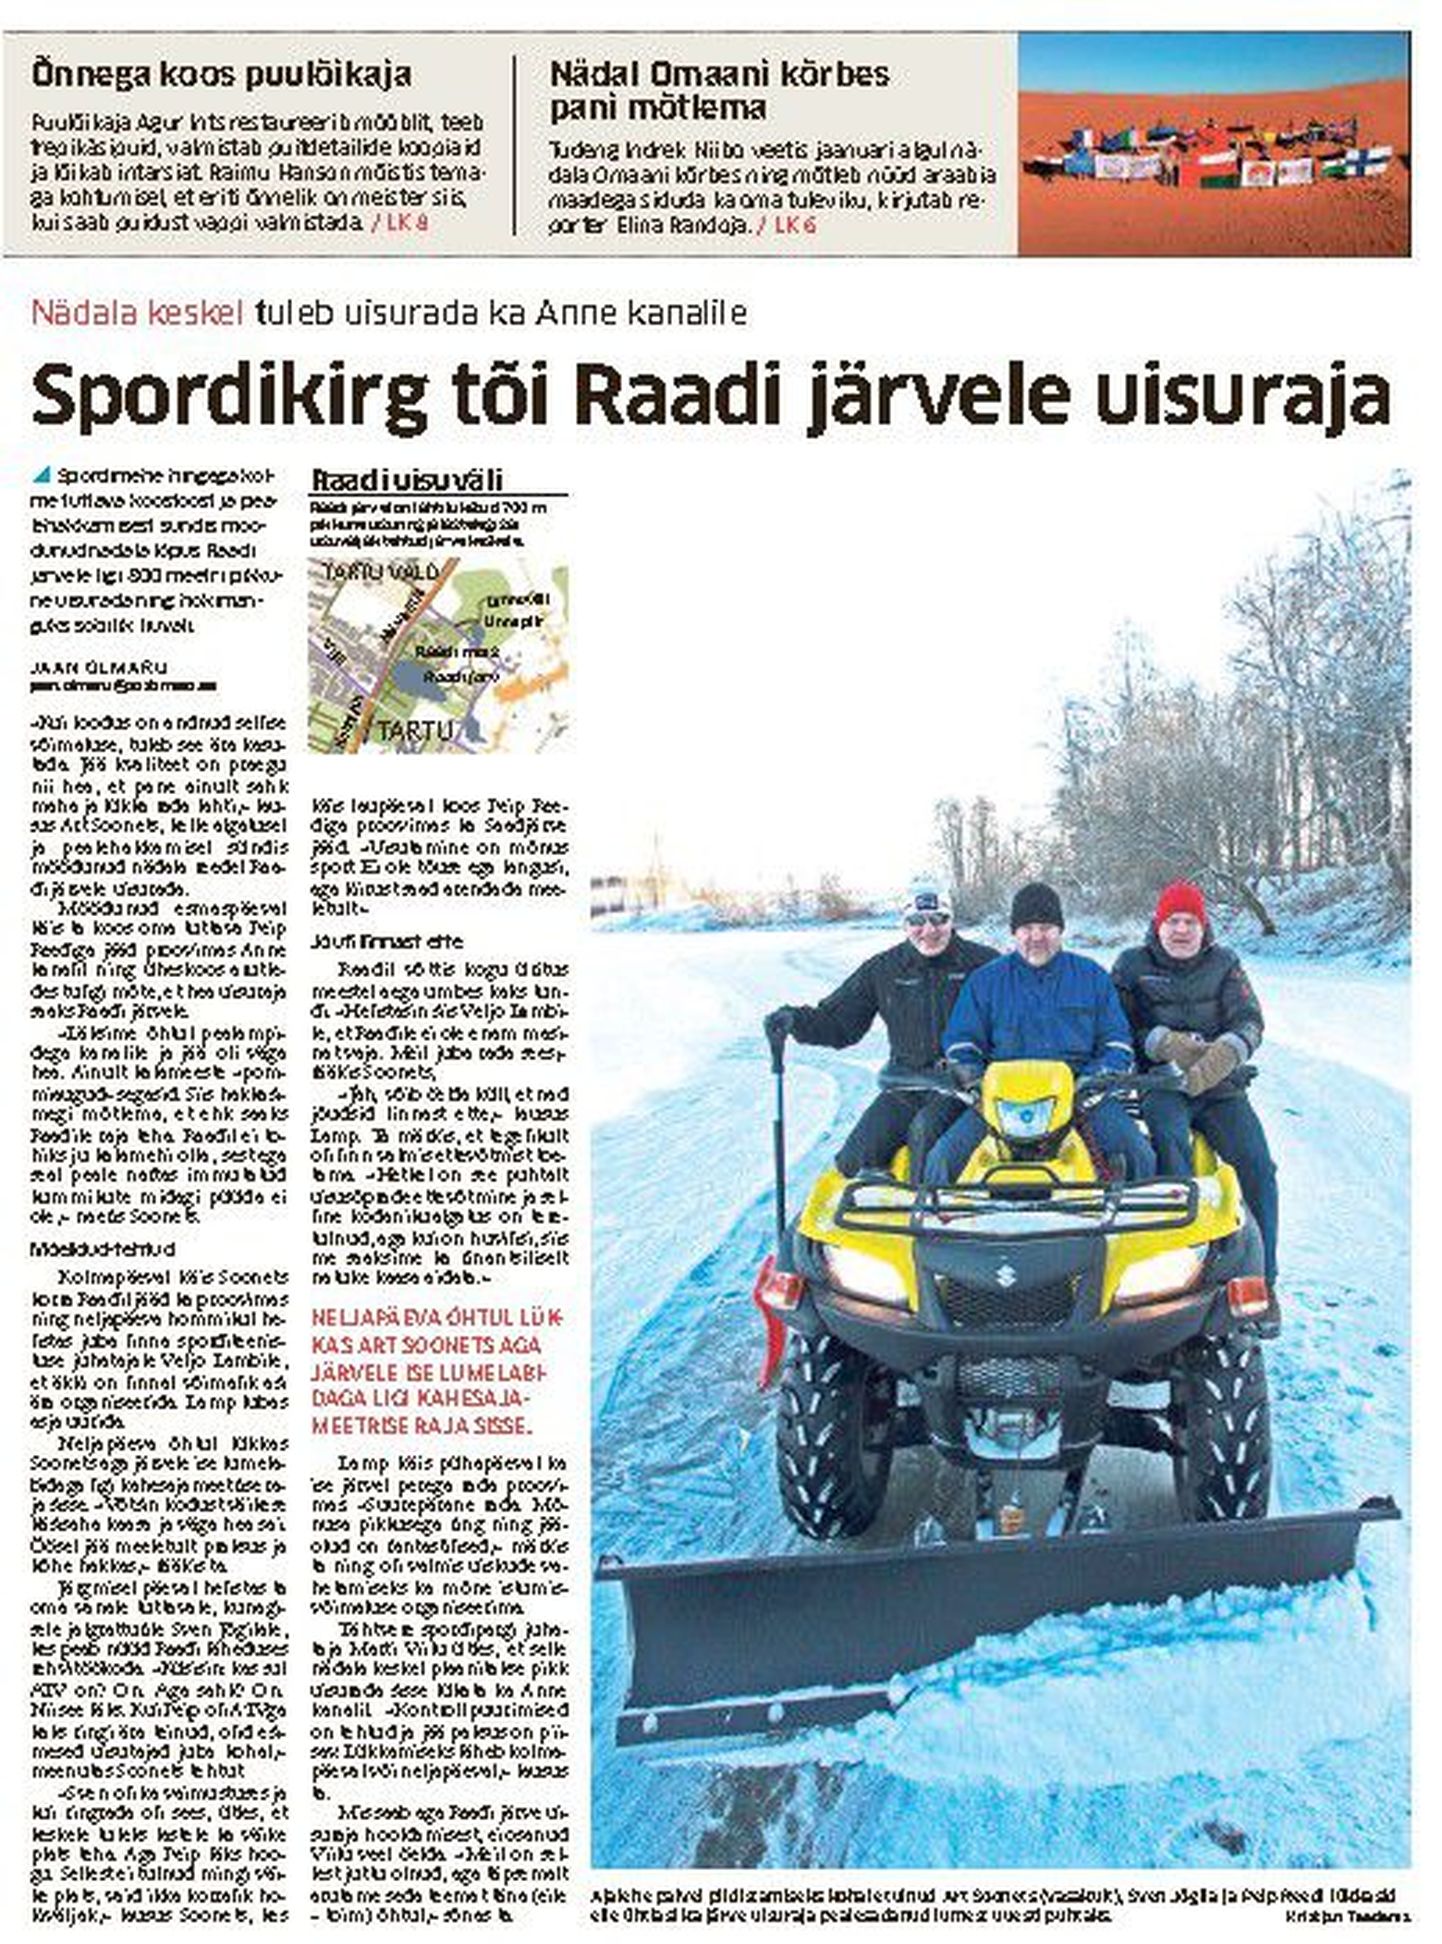 Tartu Postimees kirjutas Raadi järvele tehtud uisurajast 28. jaanuaril.